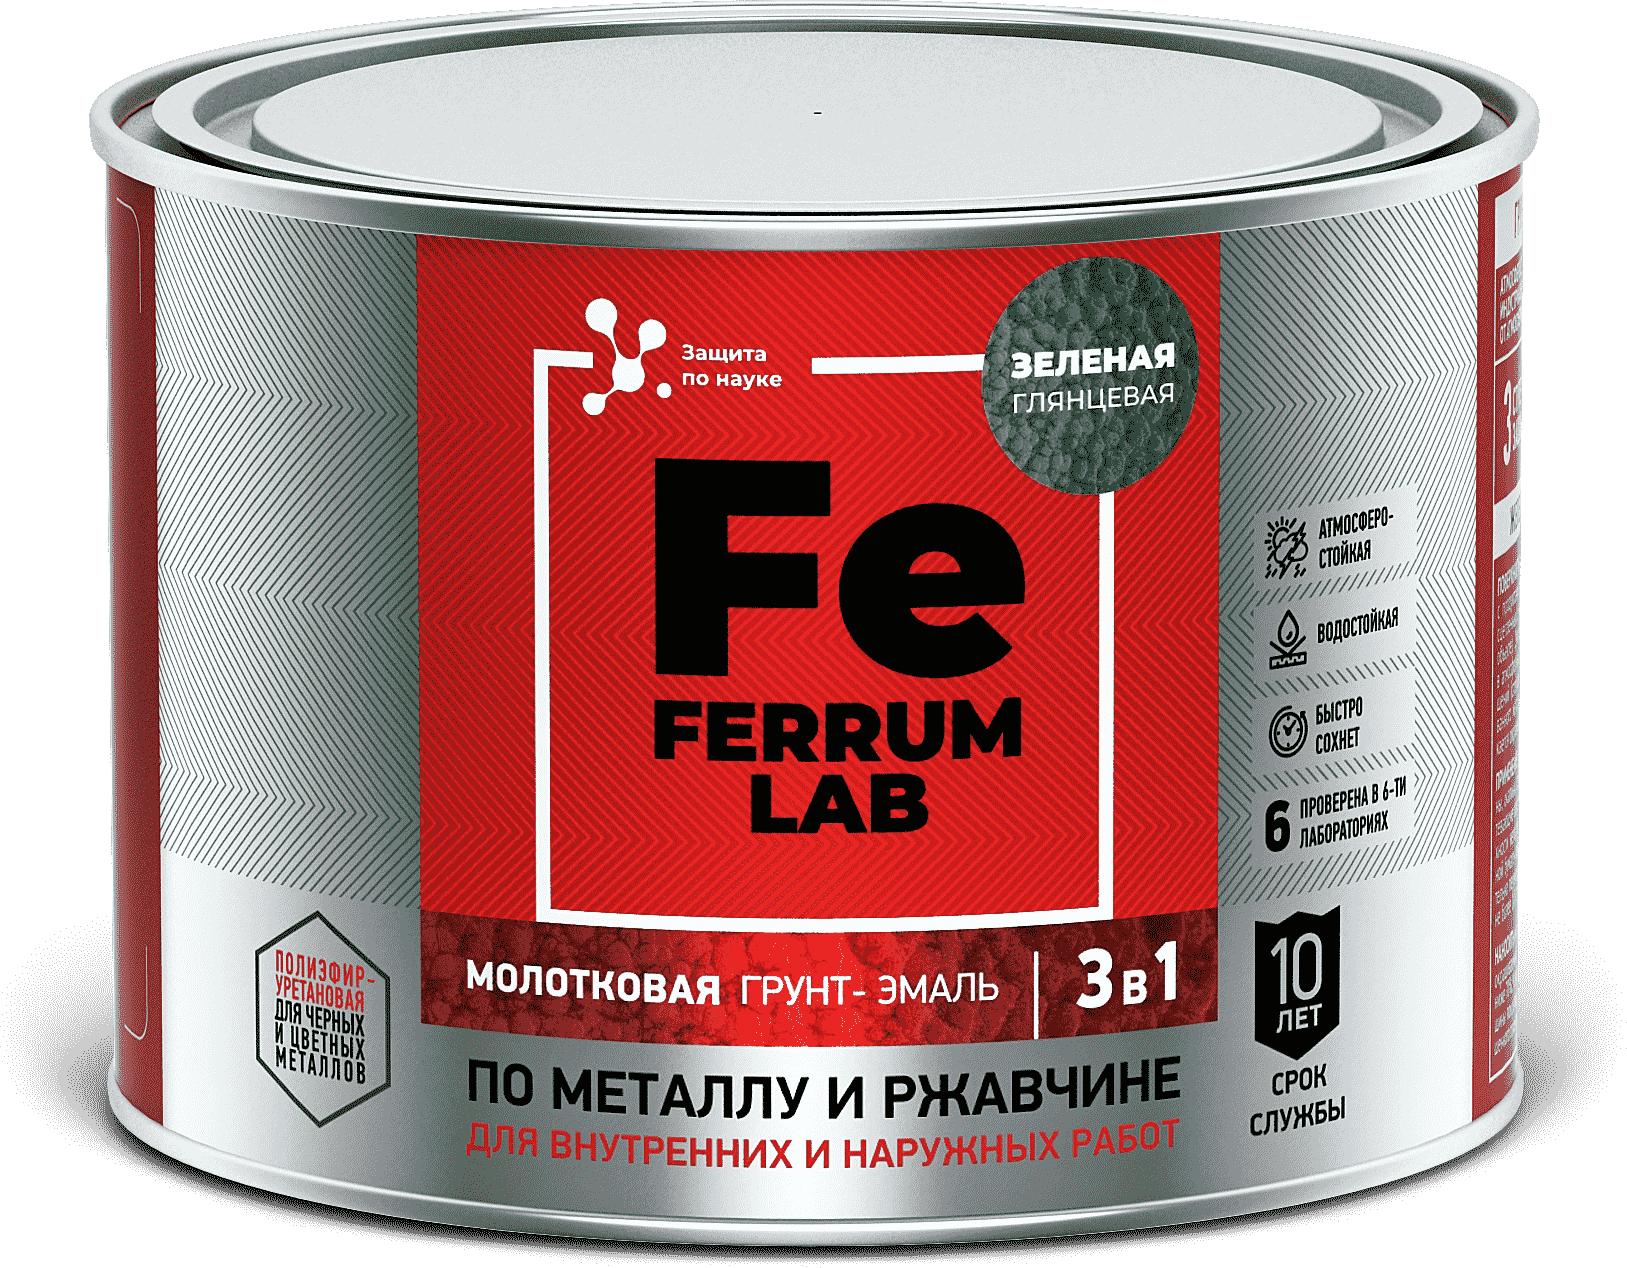 Ferrum Lab Грунт-эмальпо ржавчине 3 в 1 молотковая коричневая, банка 0,7 кг, 213551 - фотография № 1